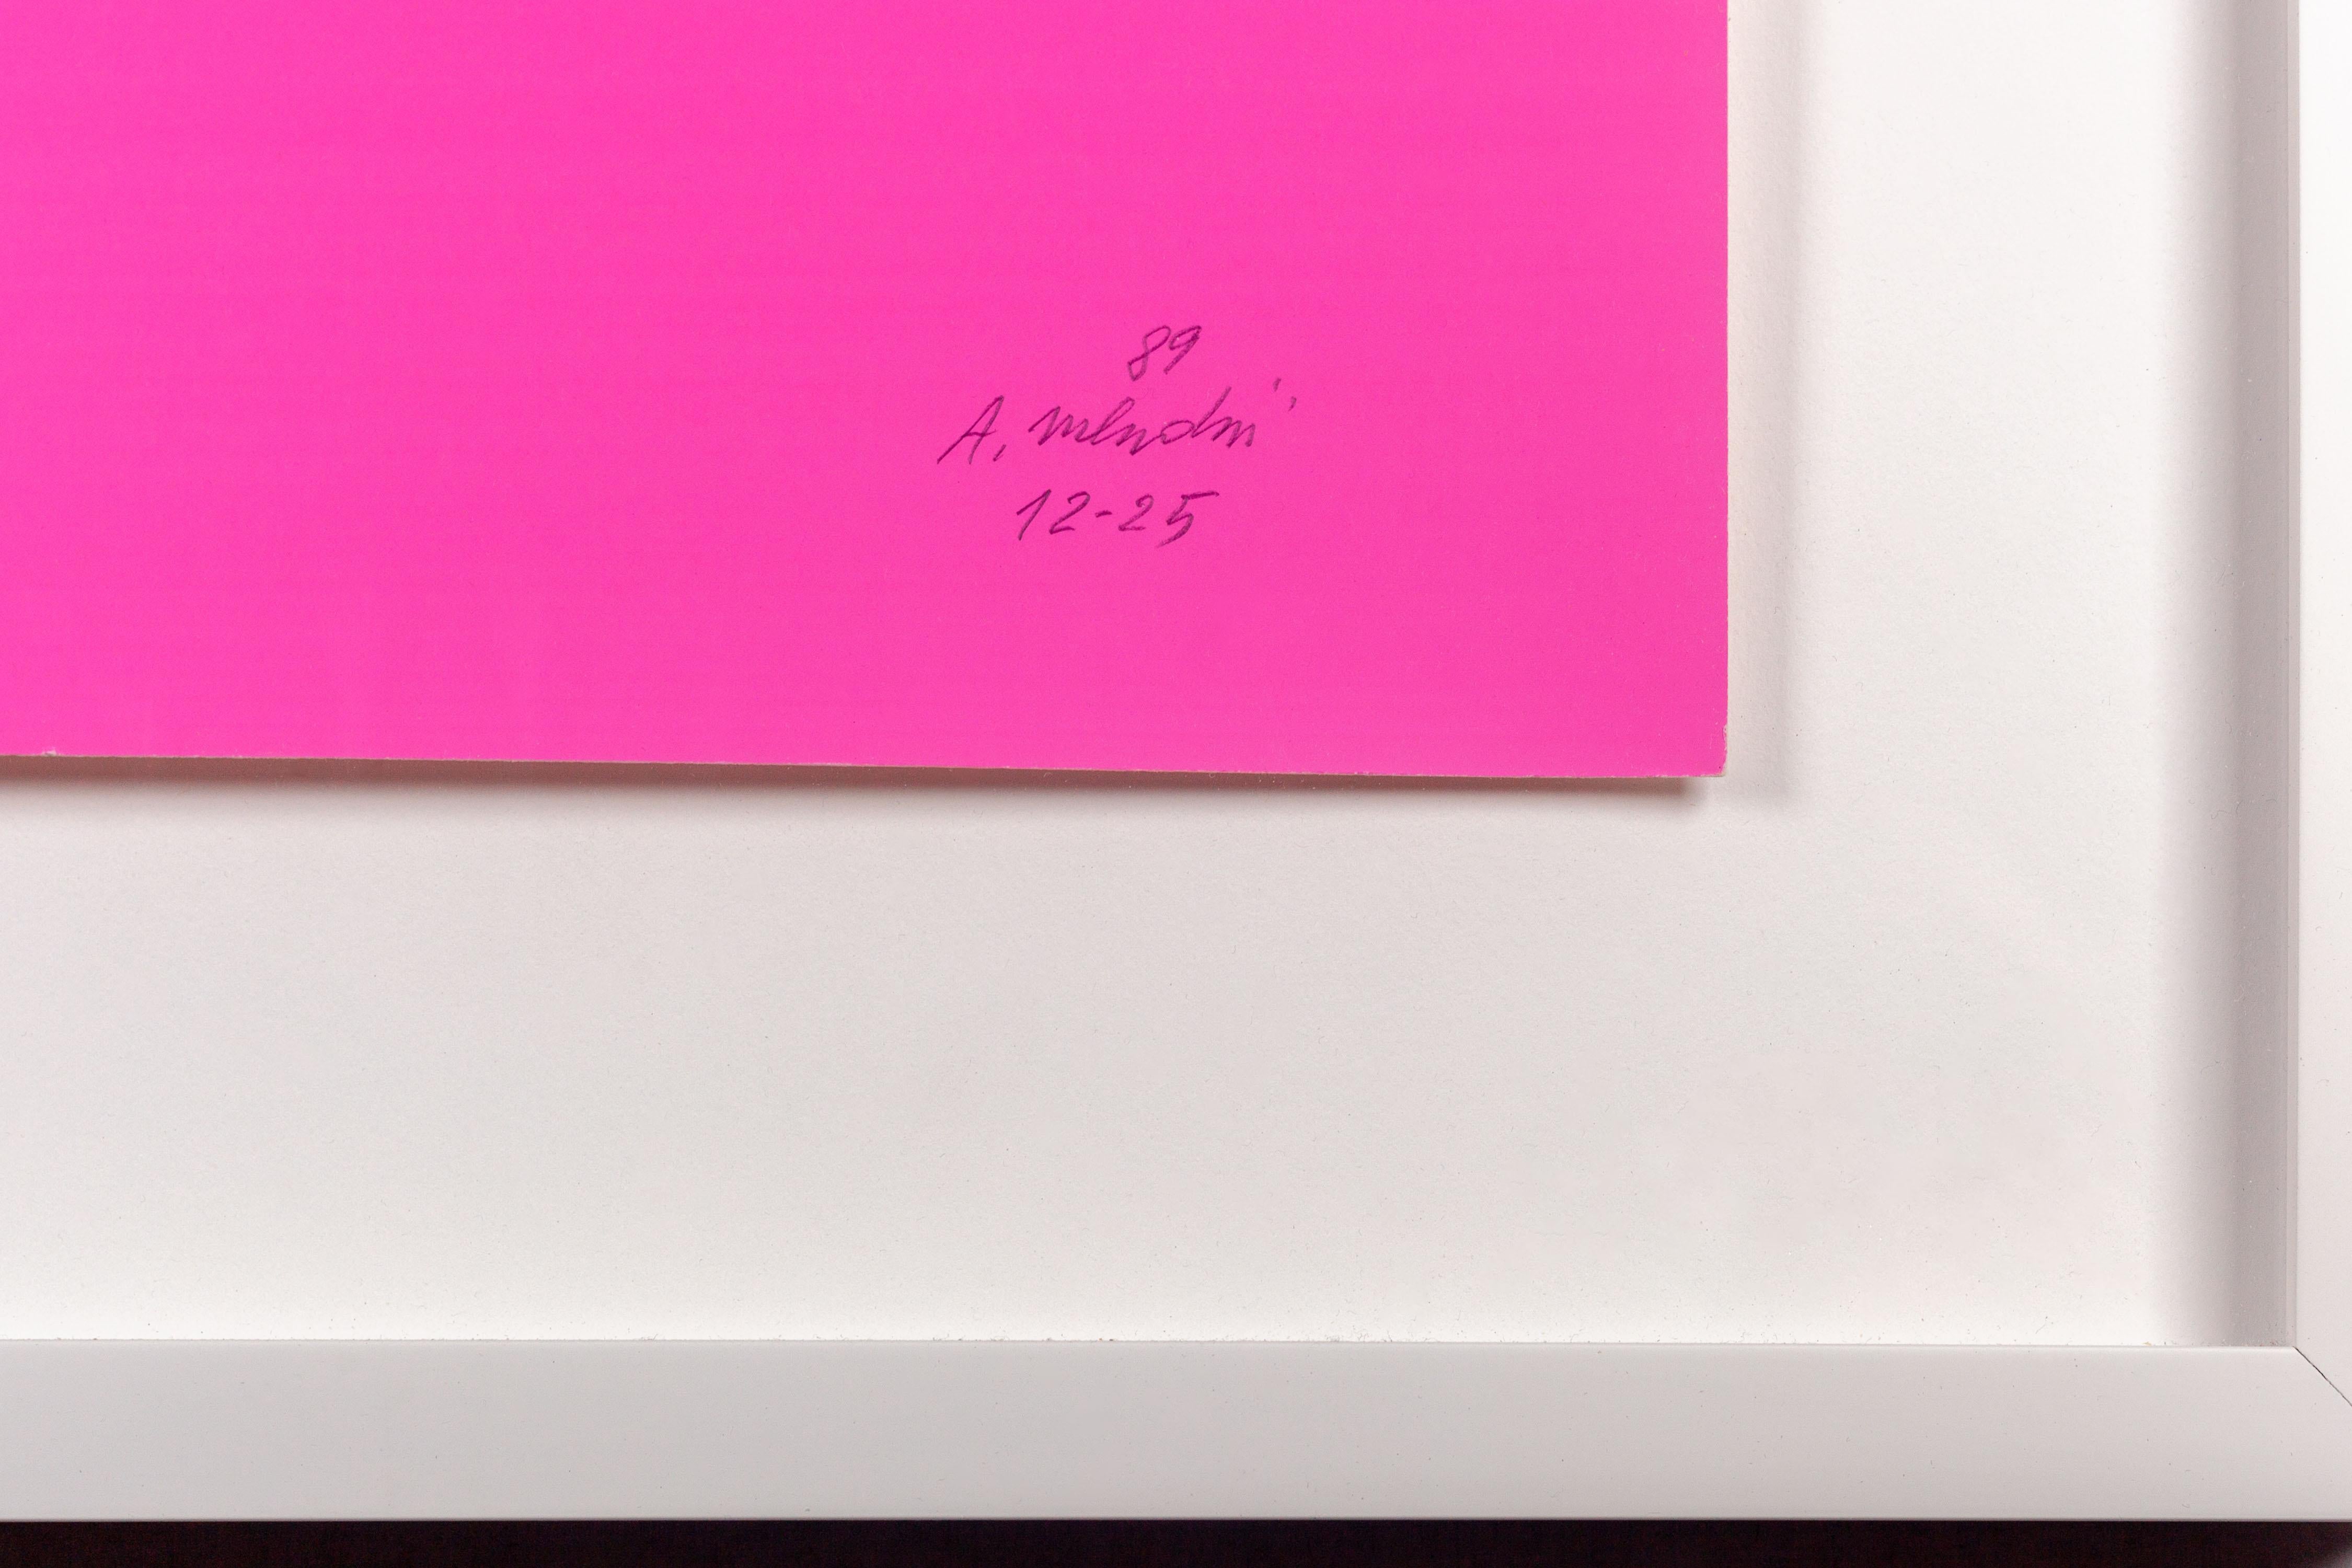 Sérigraphie de l'étoile rose d'Alessandro Mendini, réalisée pour le Studio Alchimia en 1989. Whiting présente une grande étoile noire et blanche qui domine la composition, sur un fond rose vif qui fait ressortir la figure. L'étoile est composée d'un